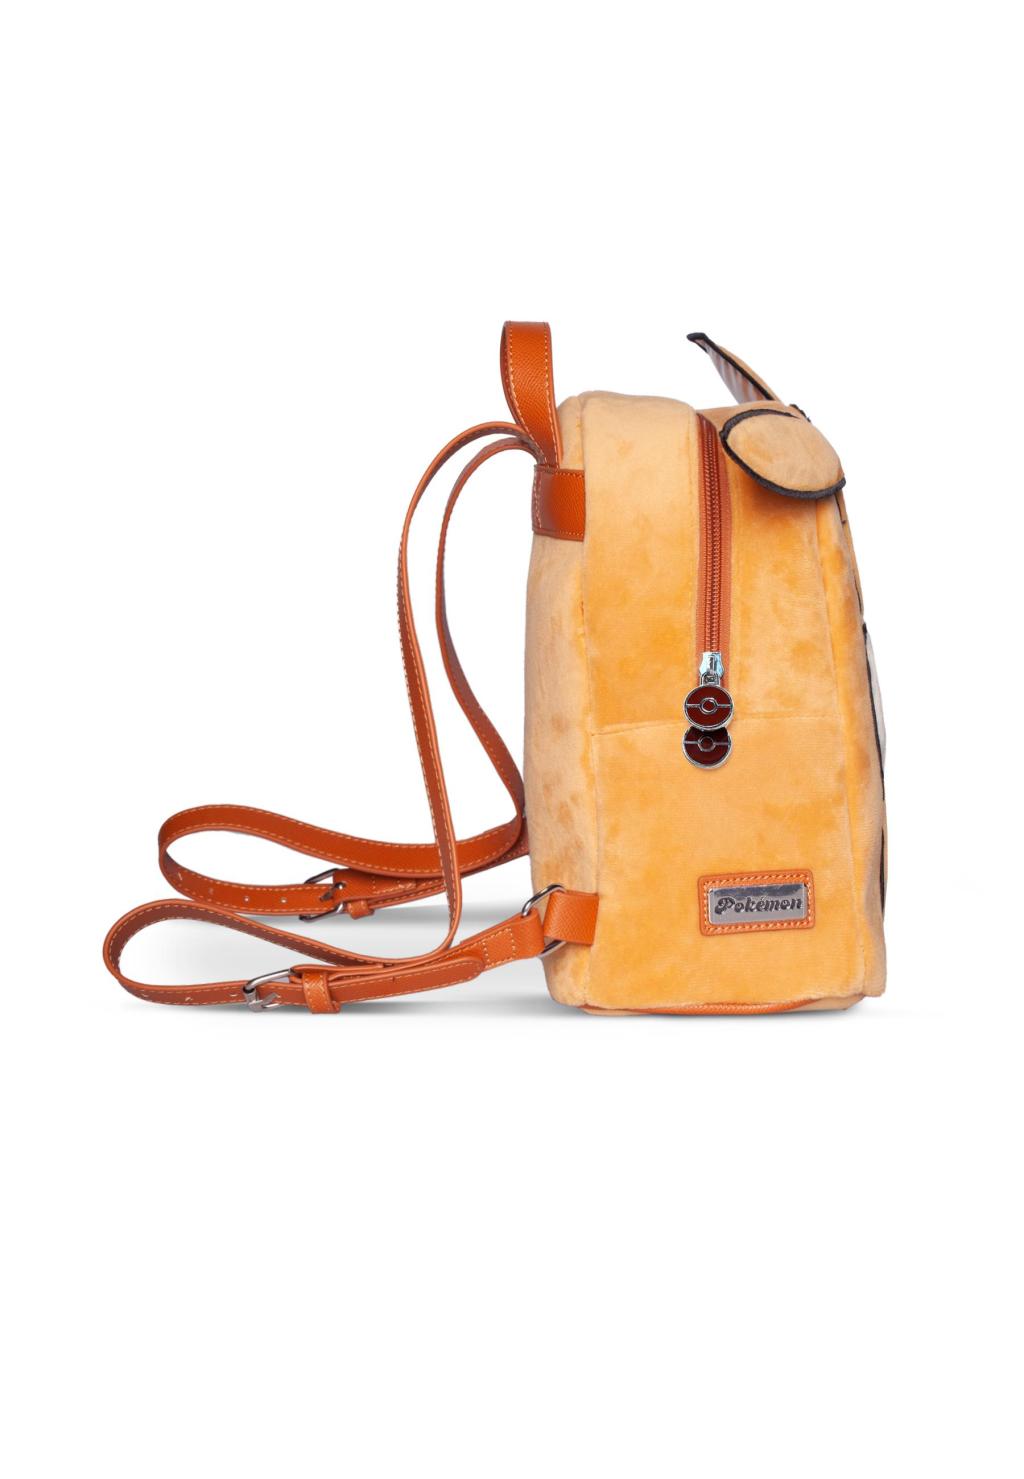 POKEMON - Eevee - Body - Backpack Novelty '26x20x12cm'